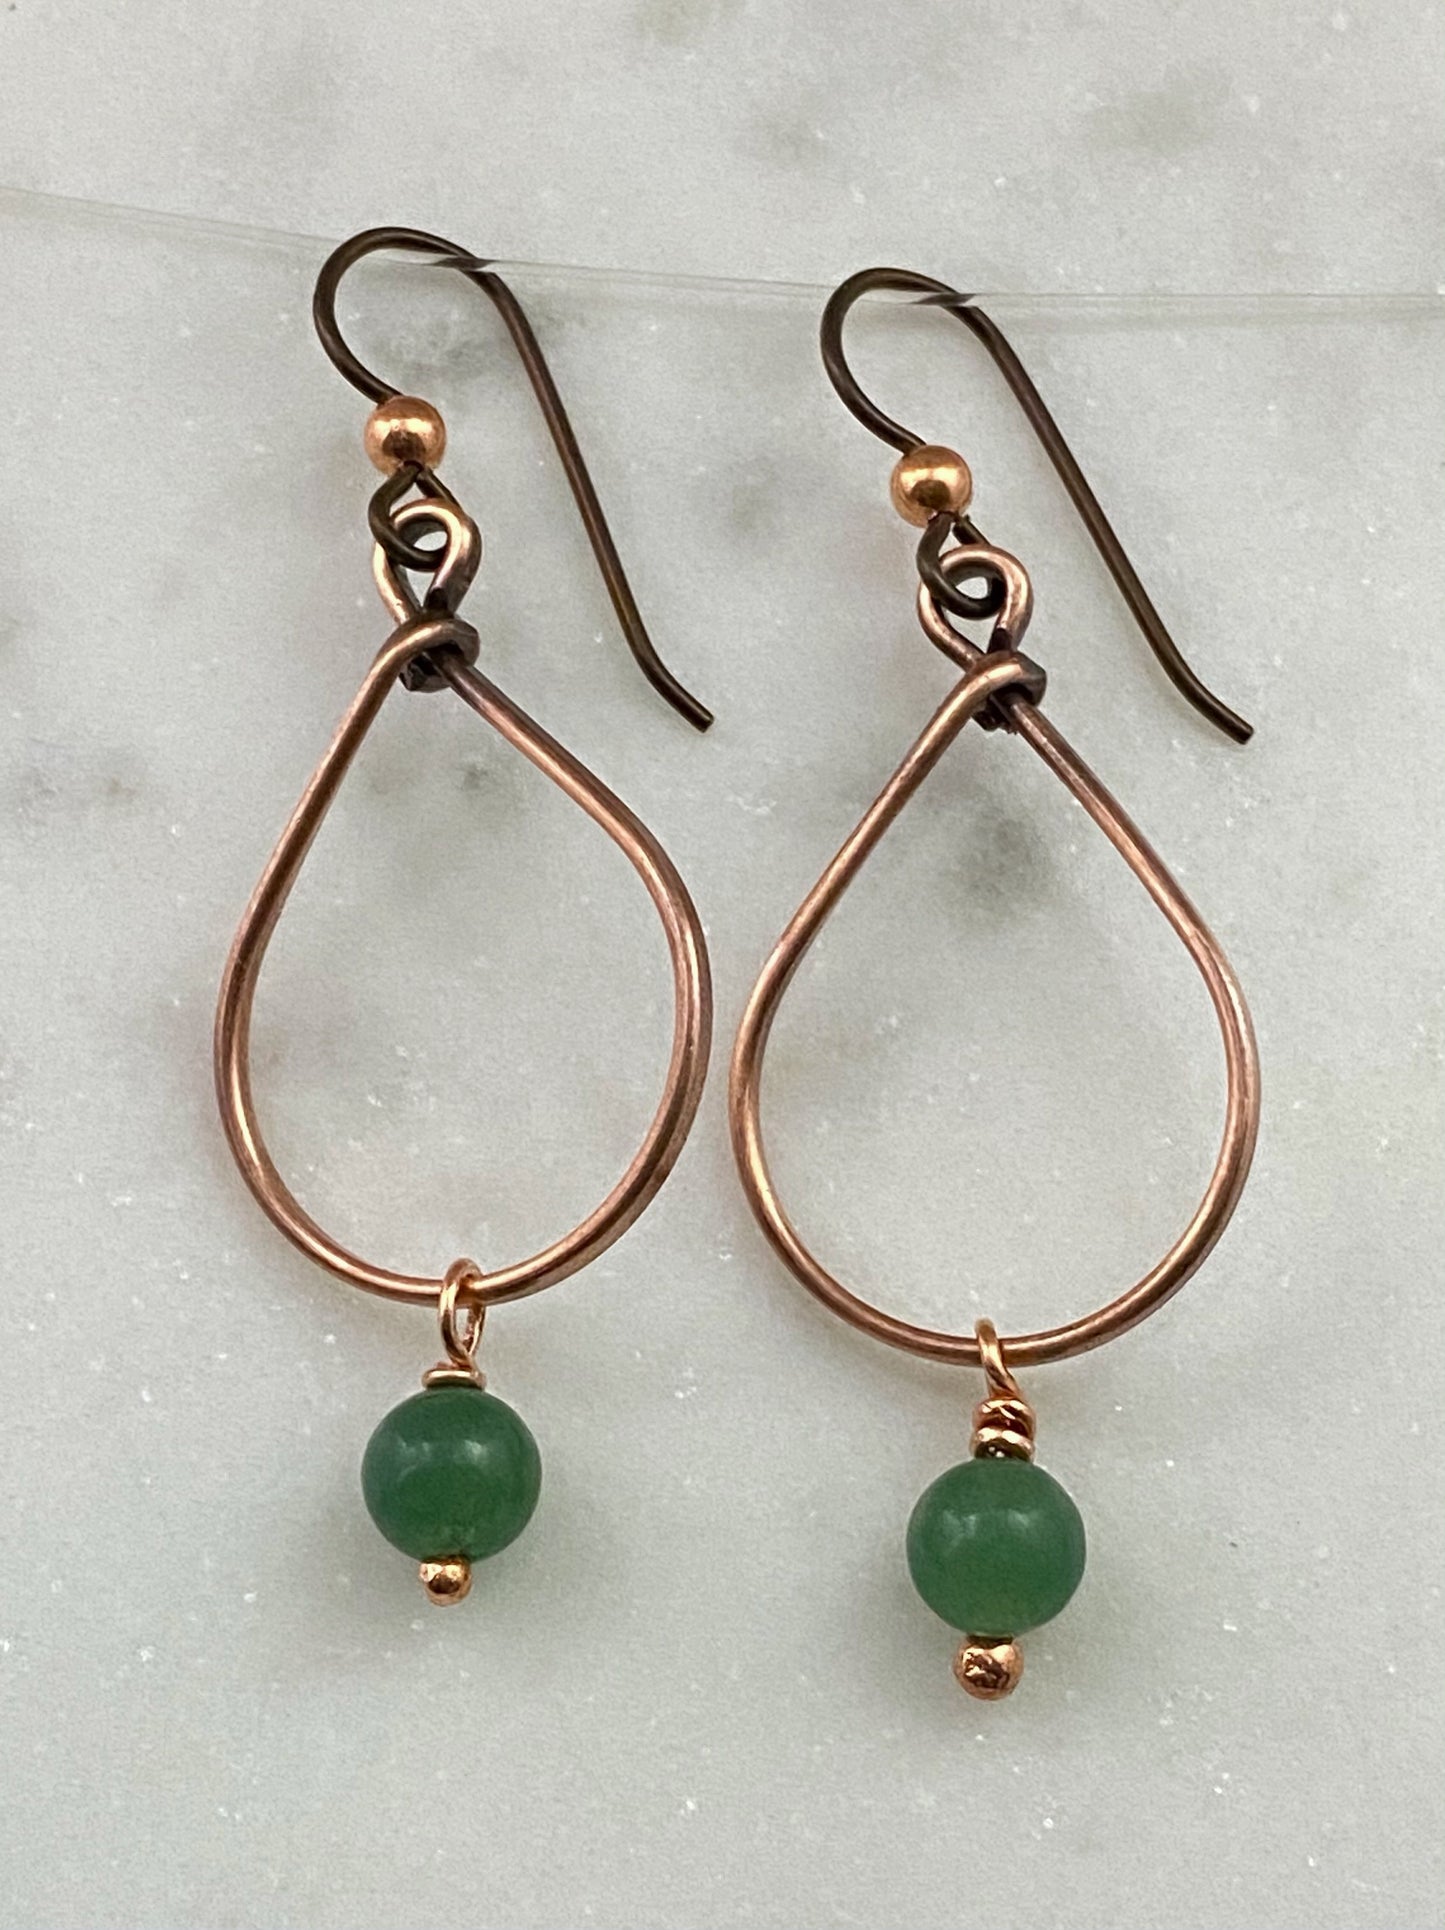 Copper teardrop hoop earrings with jade